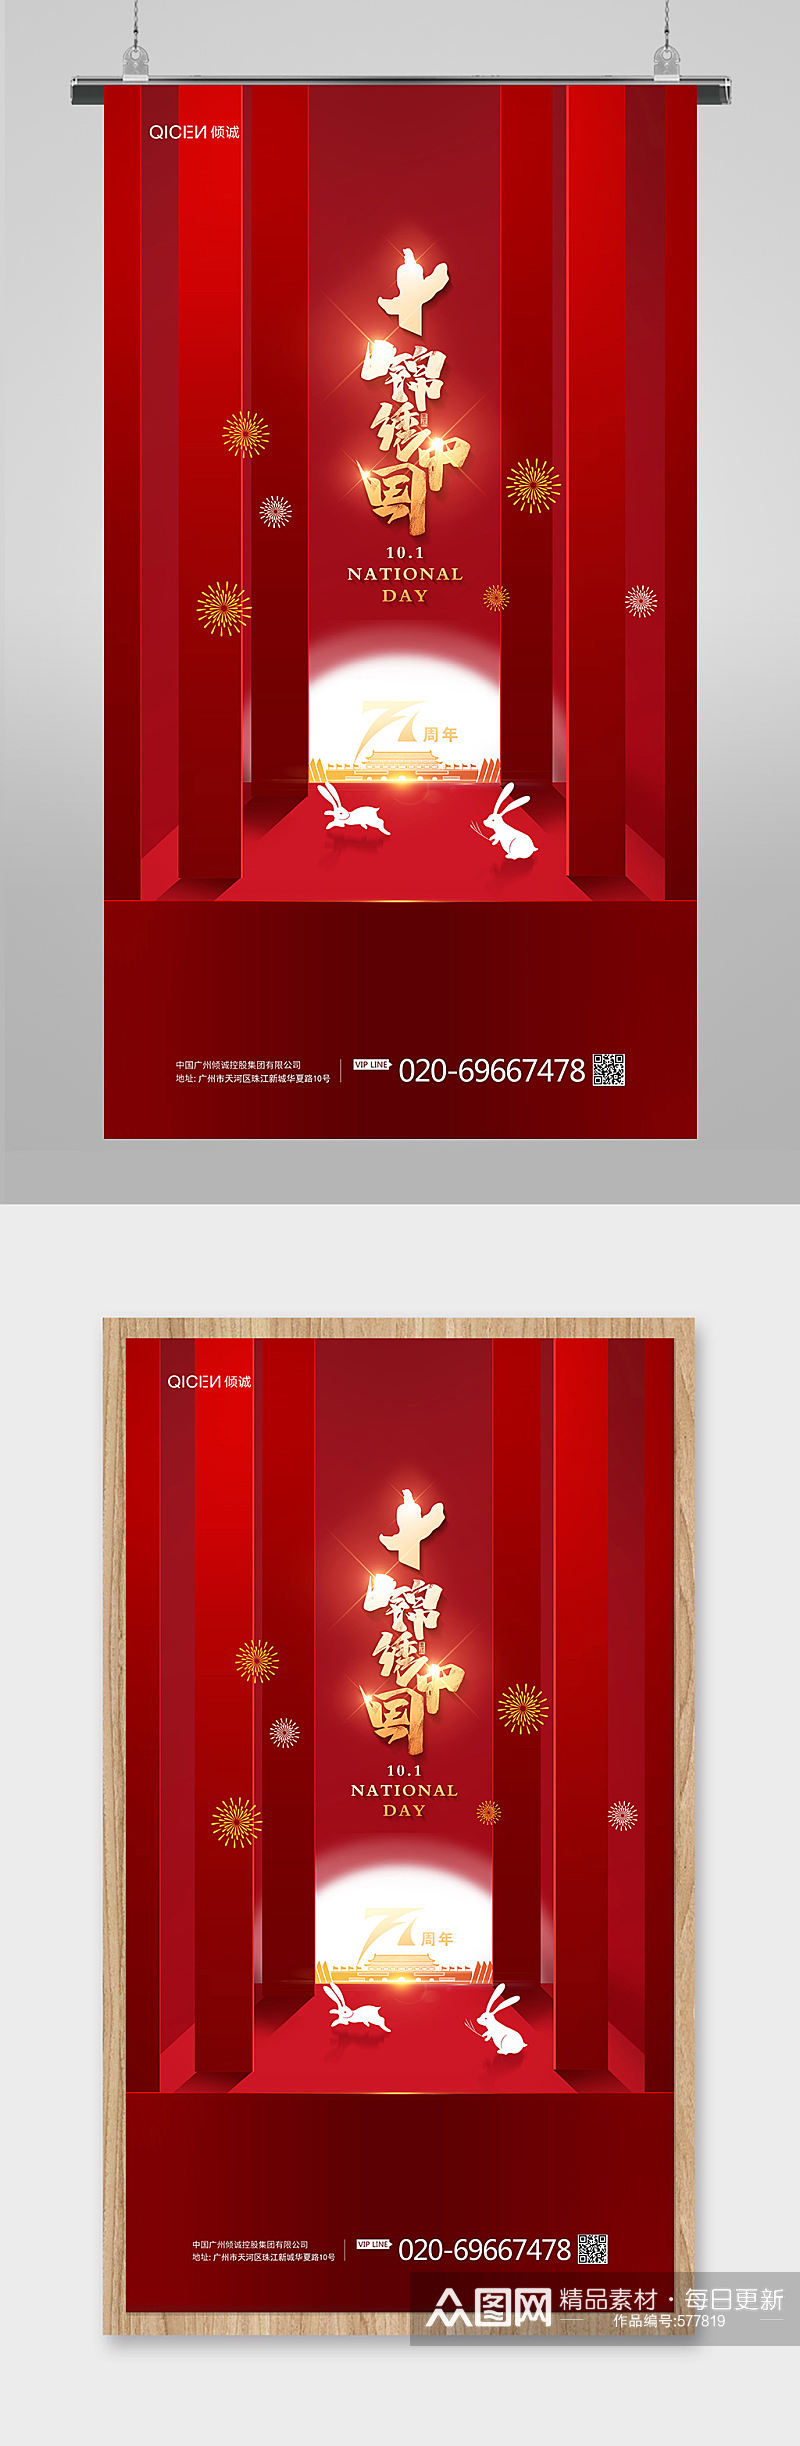 大气红色锦绣中国十一国庆节节日宣传海报素材